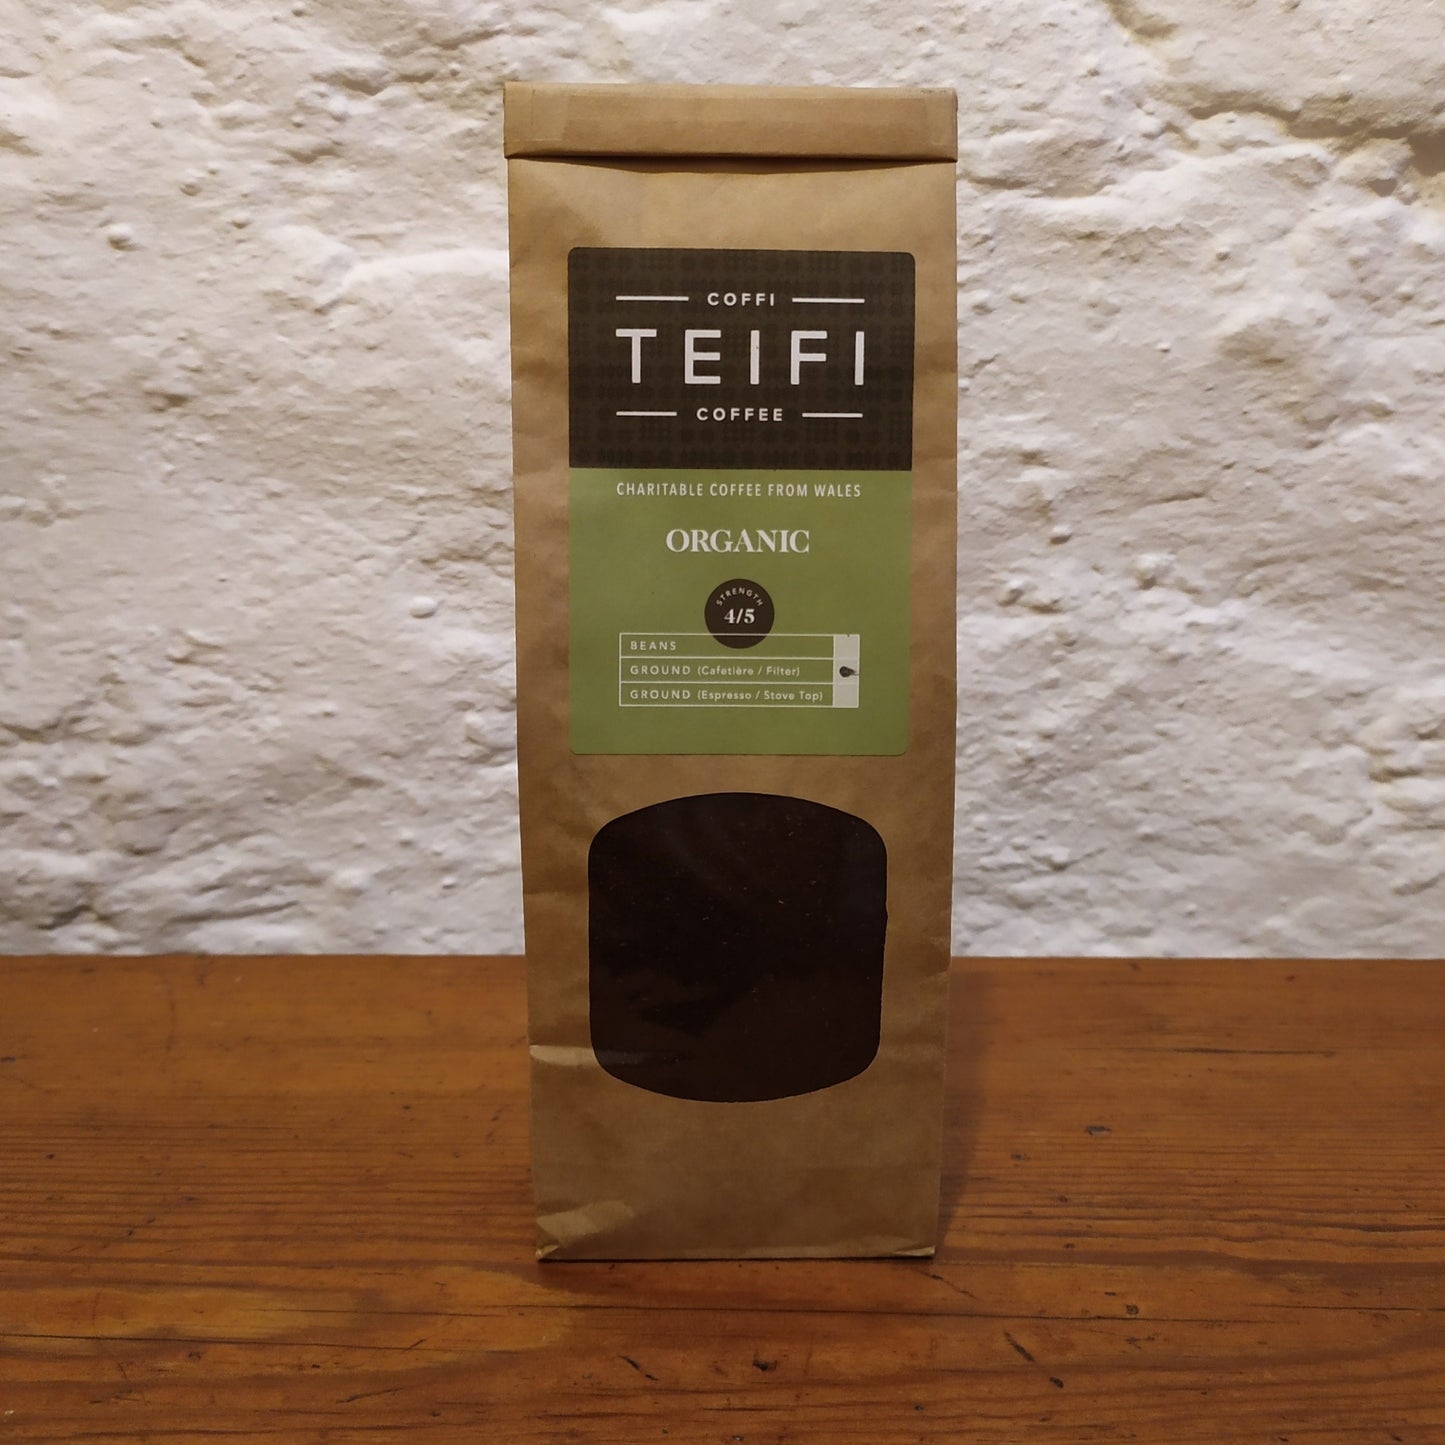 Coffee - Teifi Organic